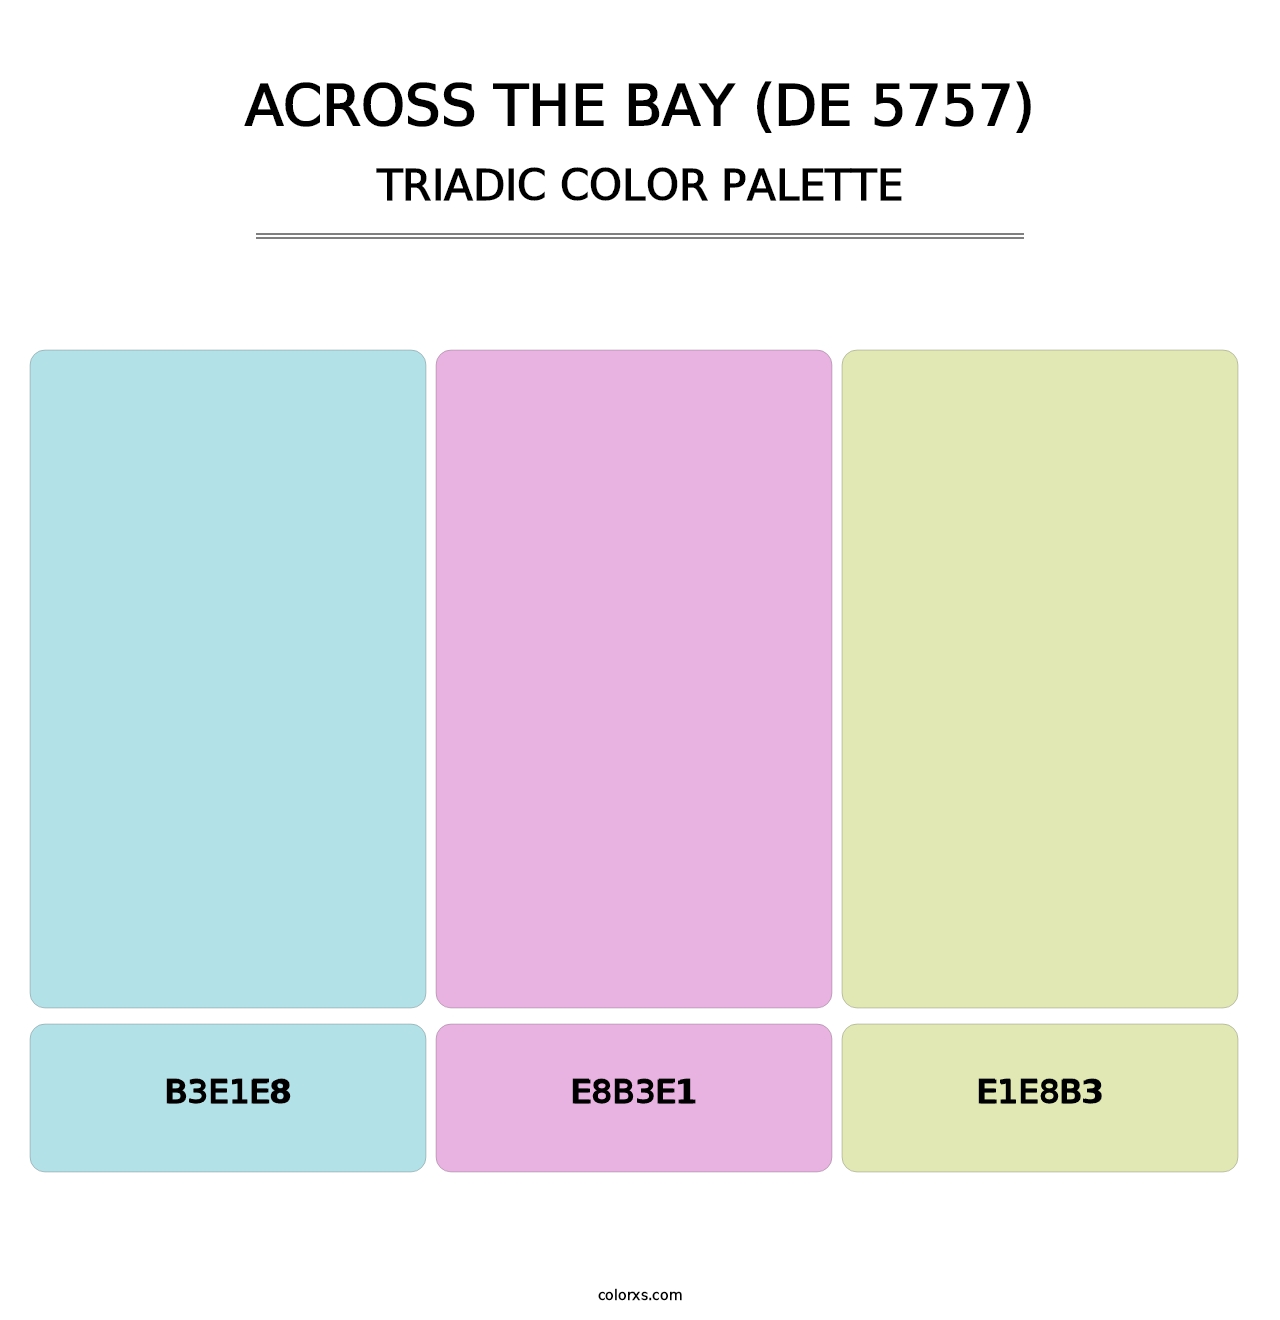 Across the Bay (DE 5757) - Triadic Color Palette